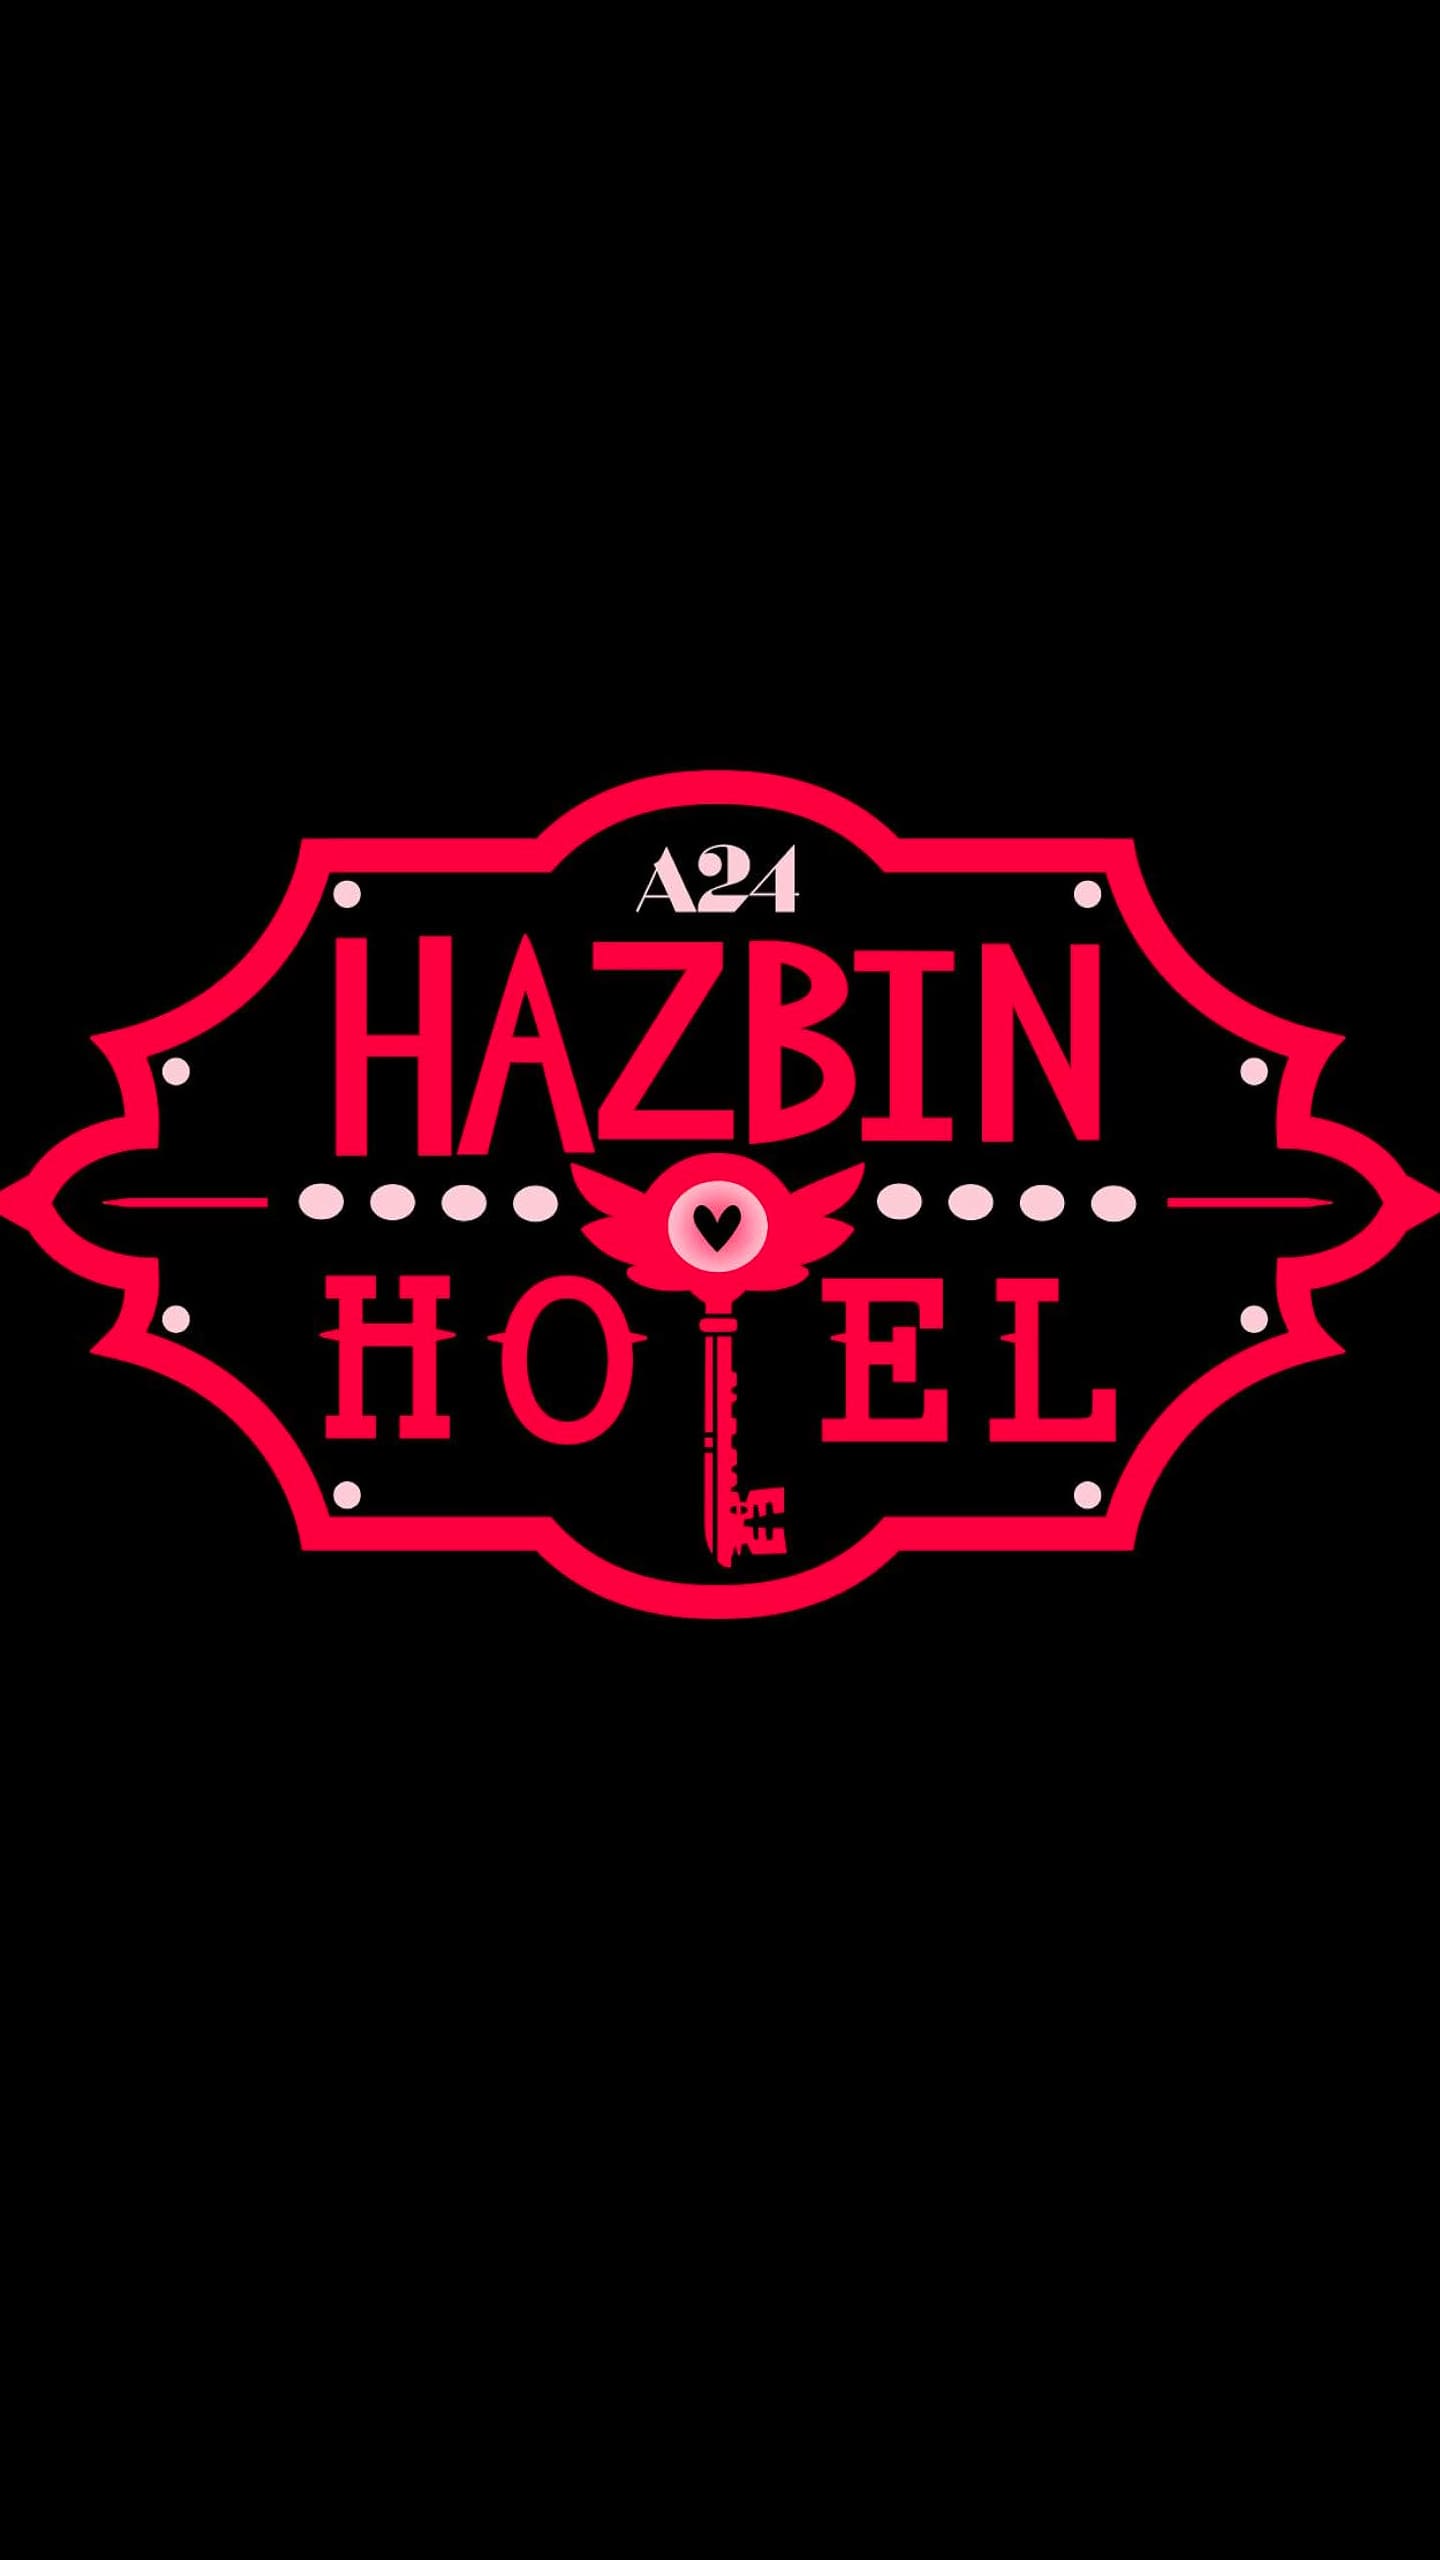 Hazbin Hotel Wallpapers